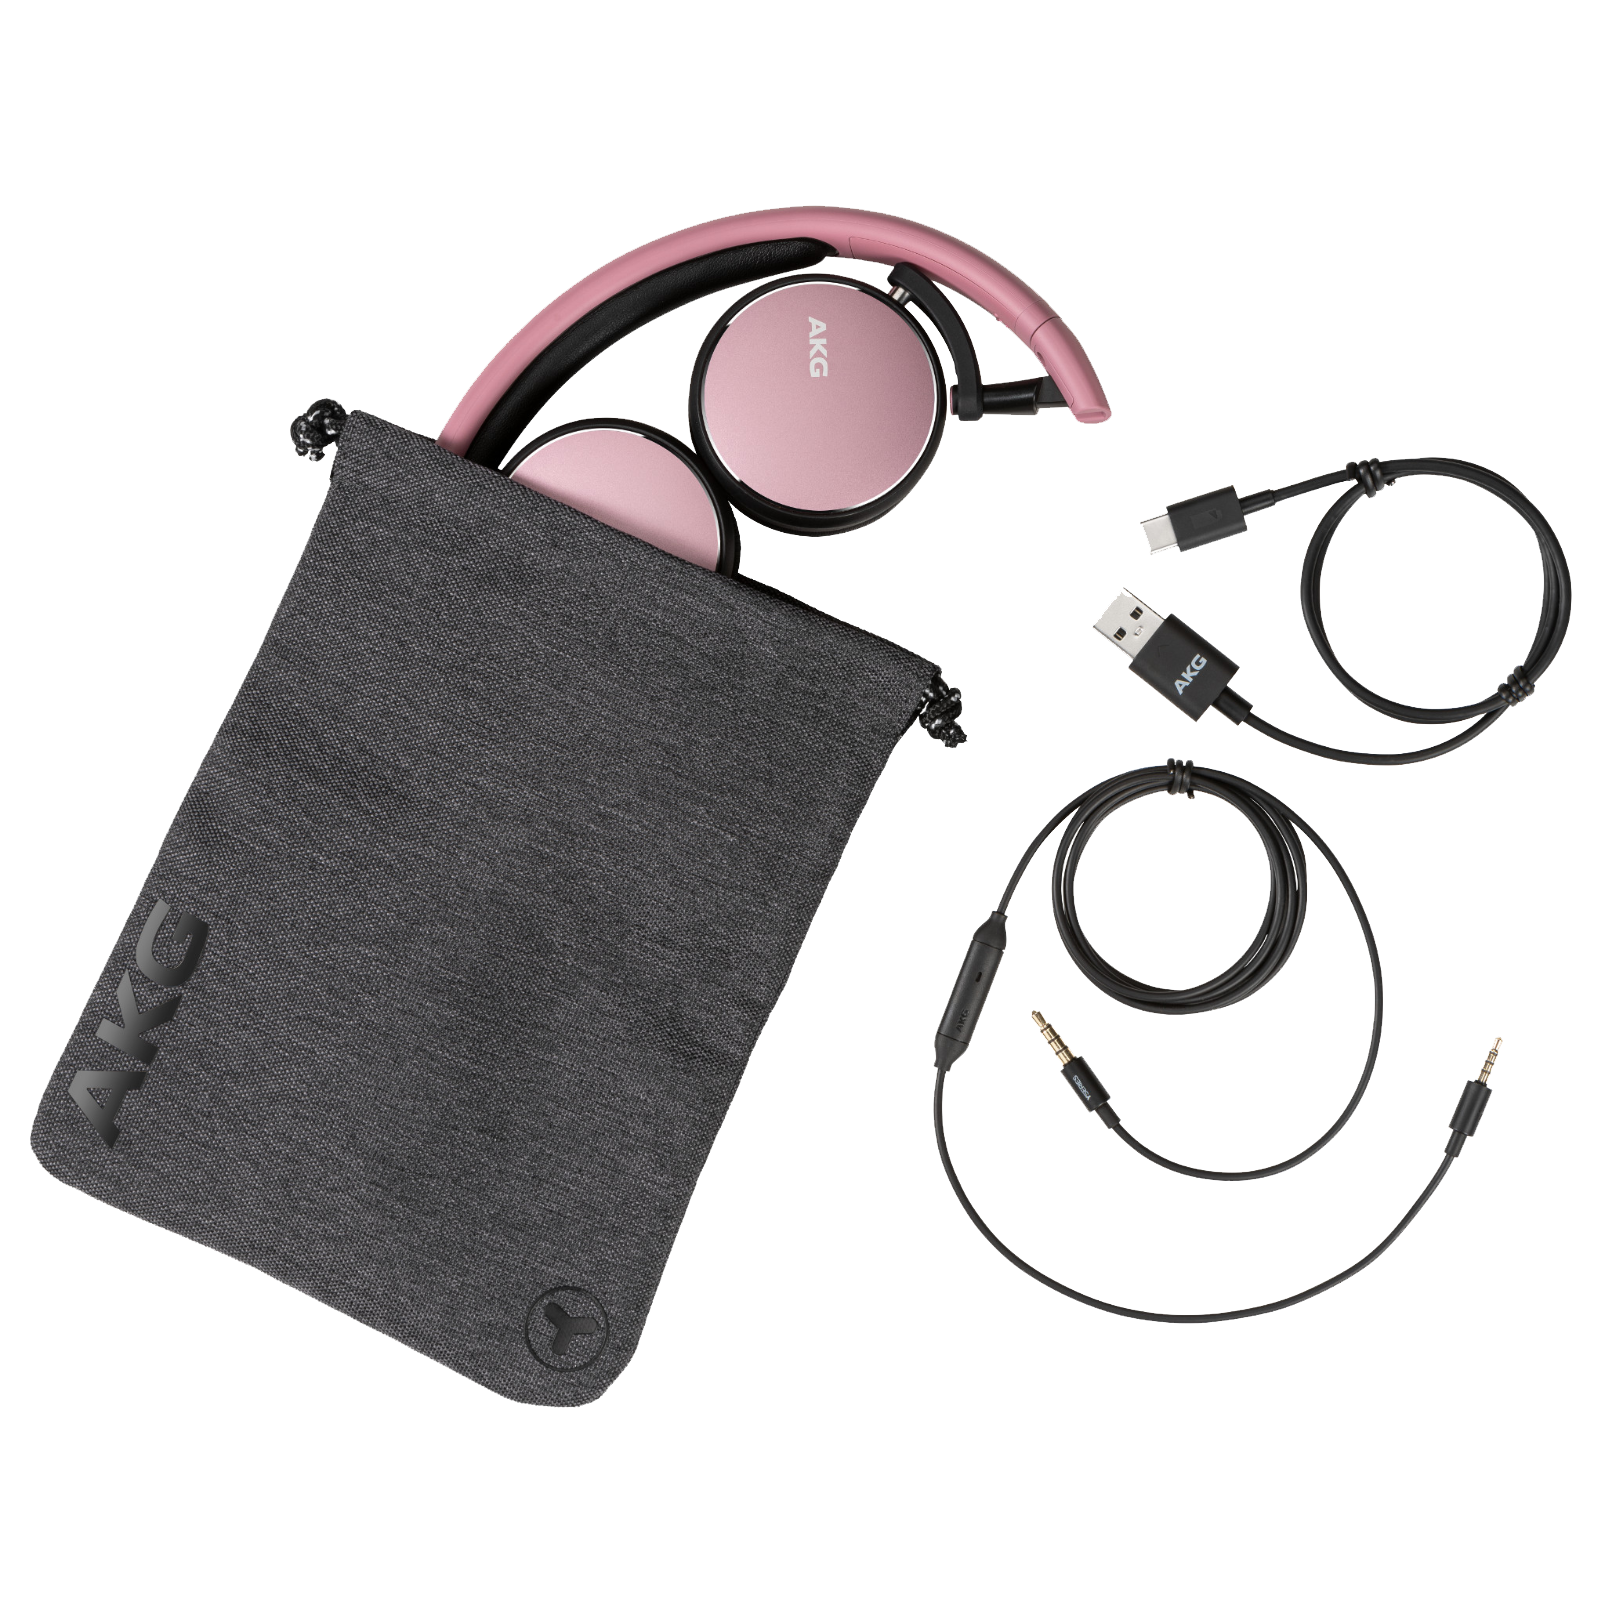 AKG Y400 WIRELESS - Pink - Wireless mini on-ear headphones - Detailshot 3